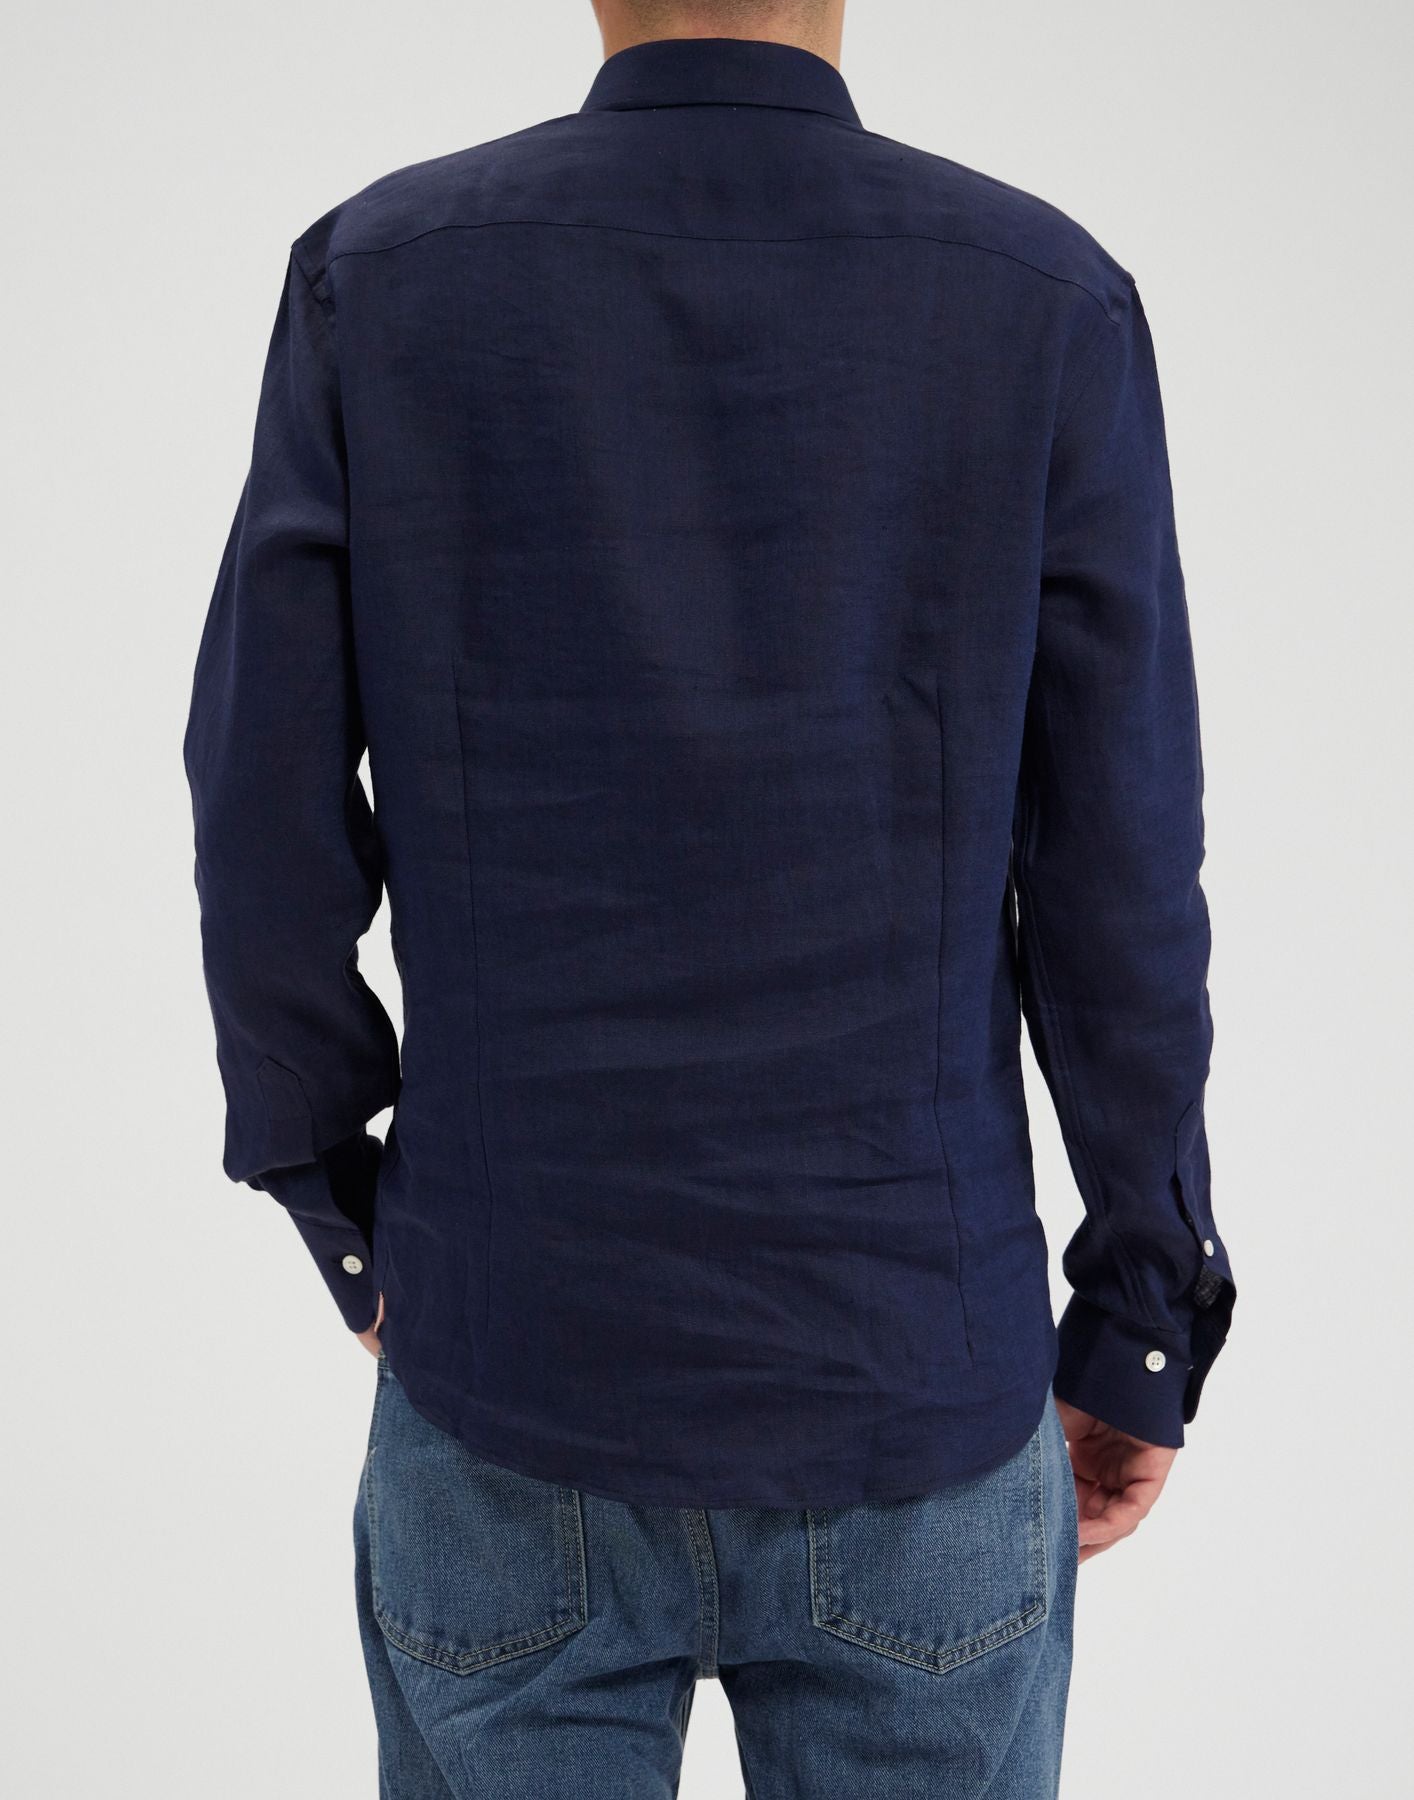 shirt-for-men-olivier-in-linen-navy-blue